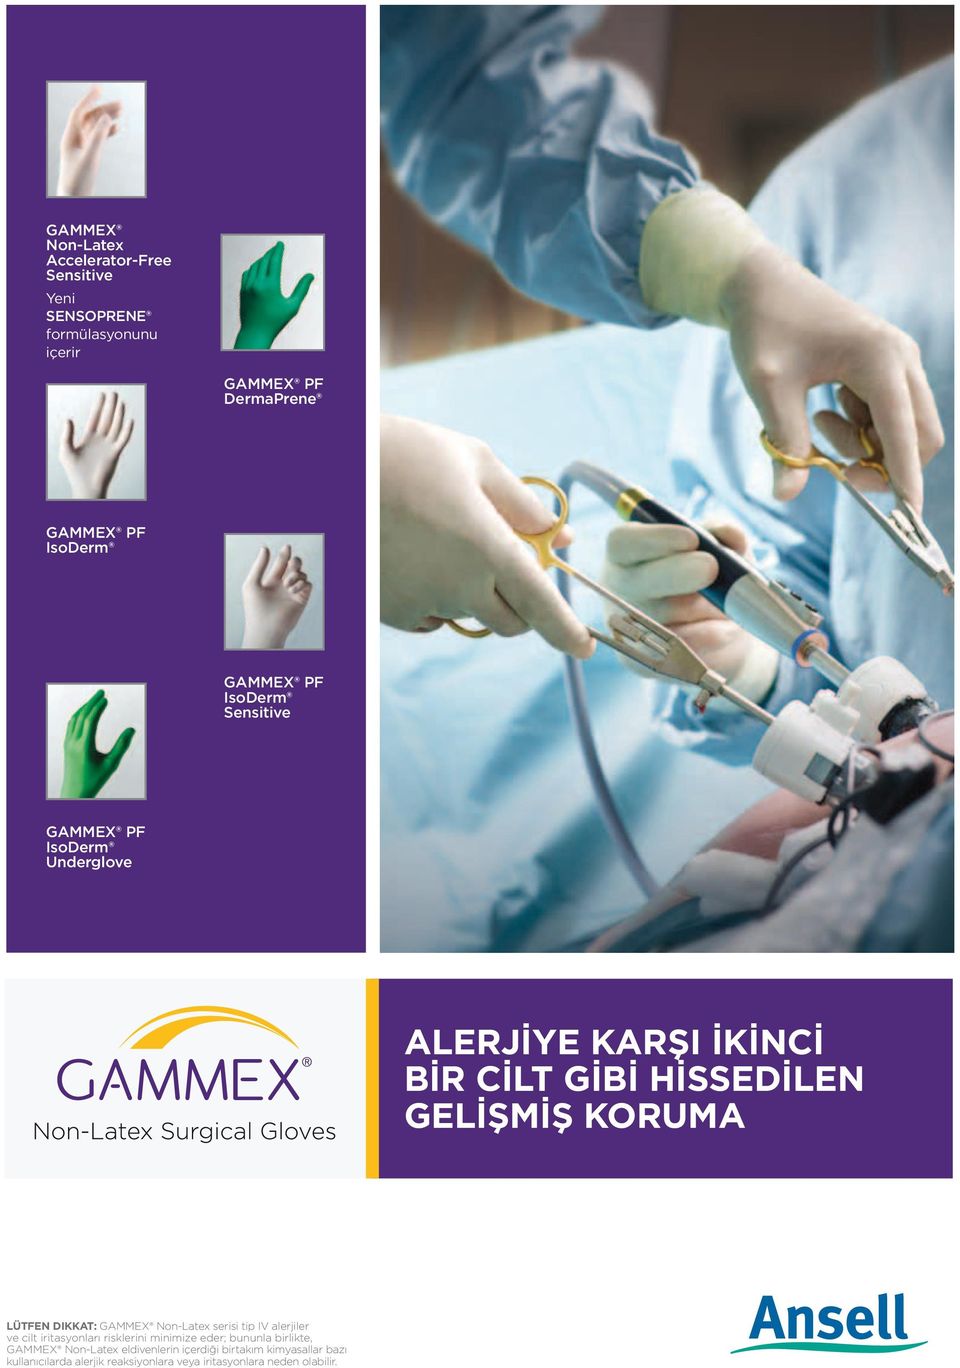 Non-Latex serisi tip IV alerjiler ve cilt iritasyonları risklerini minimize eder; bununla birlikte, GAMMEX